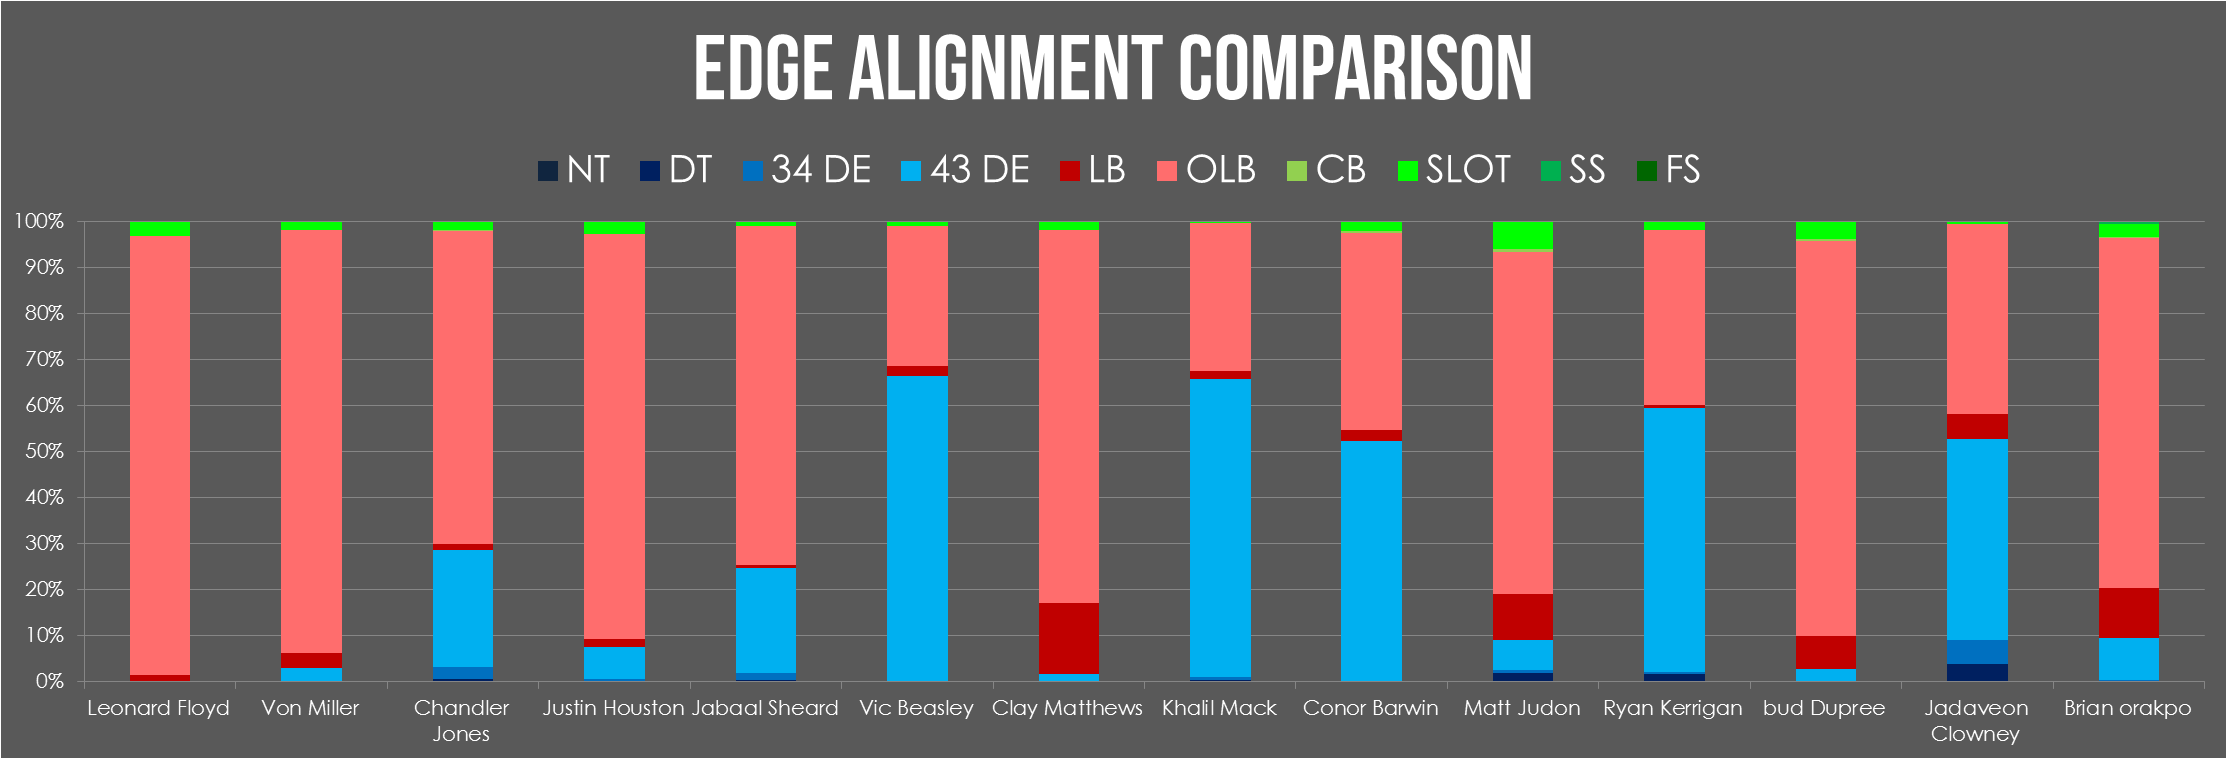 edge alignment comparison